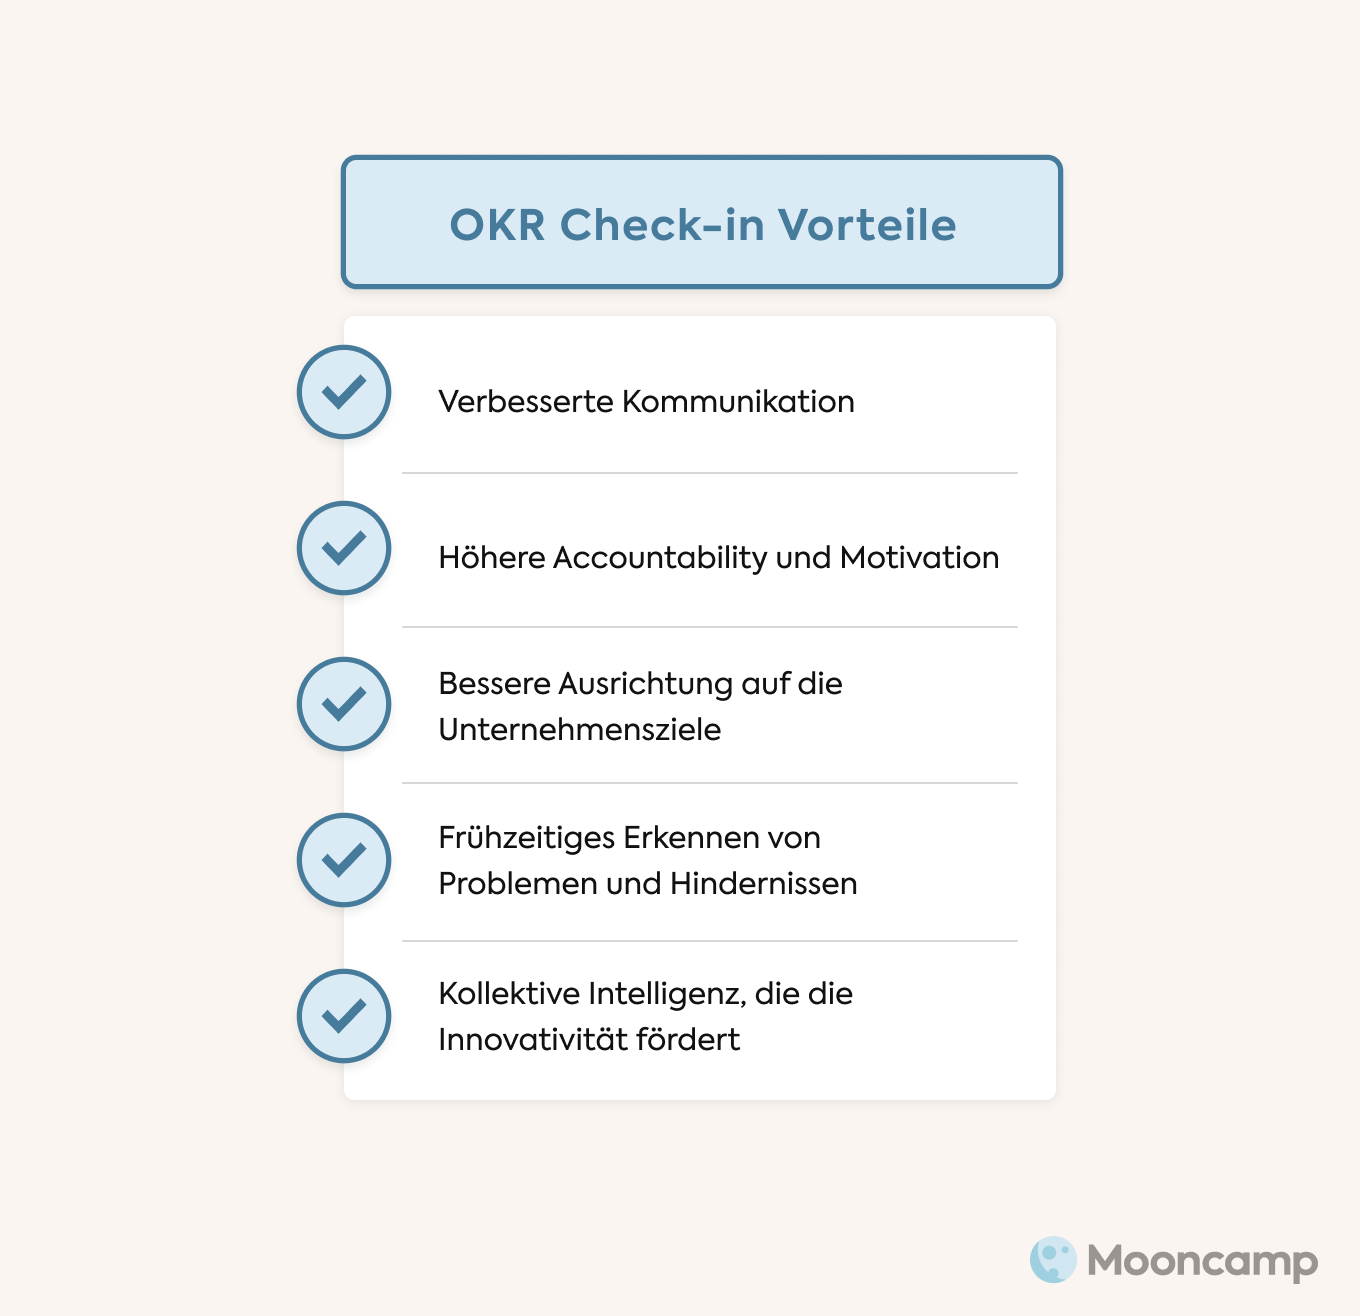 OKR Check-in Vorteile